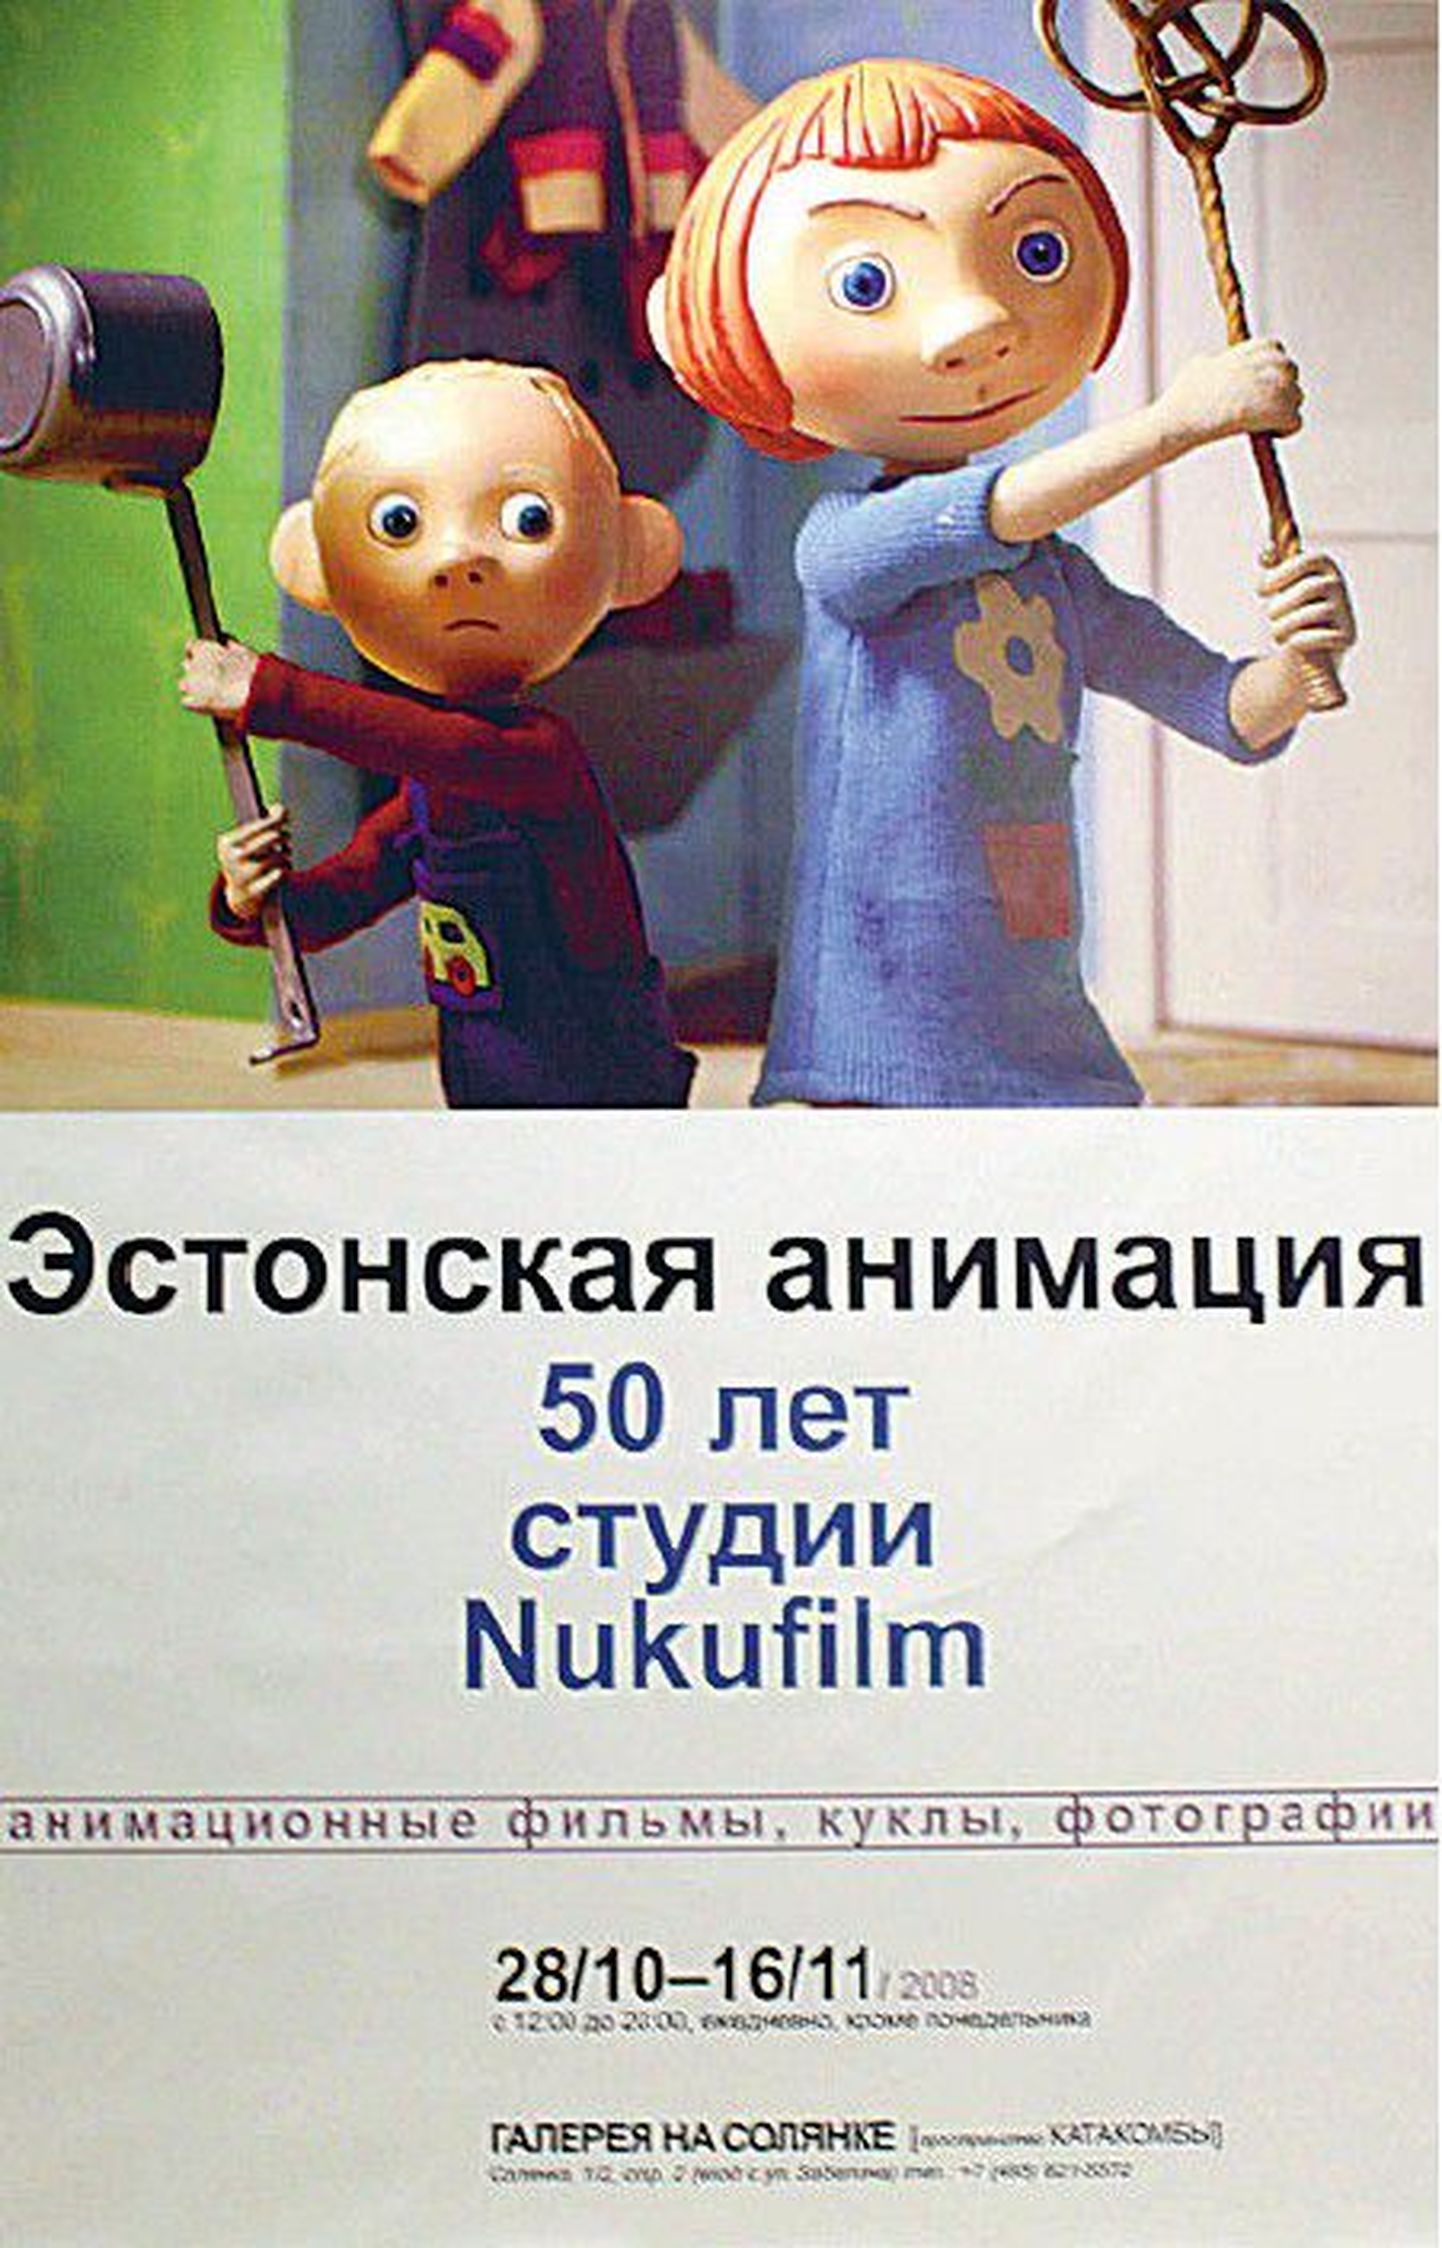 Nukufilmi näituse plakat.